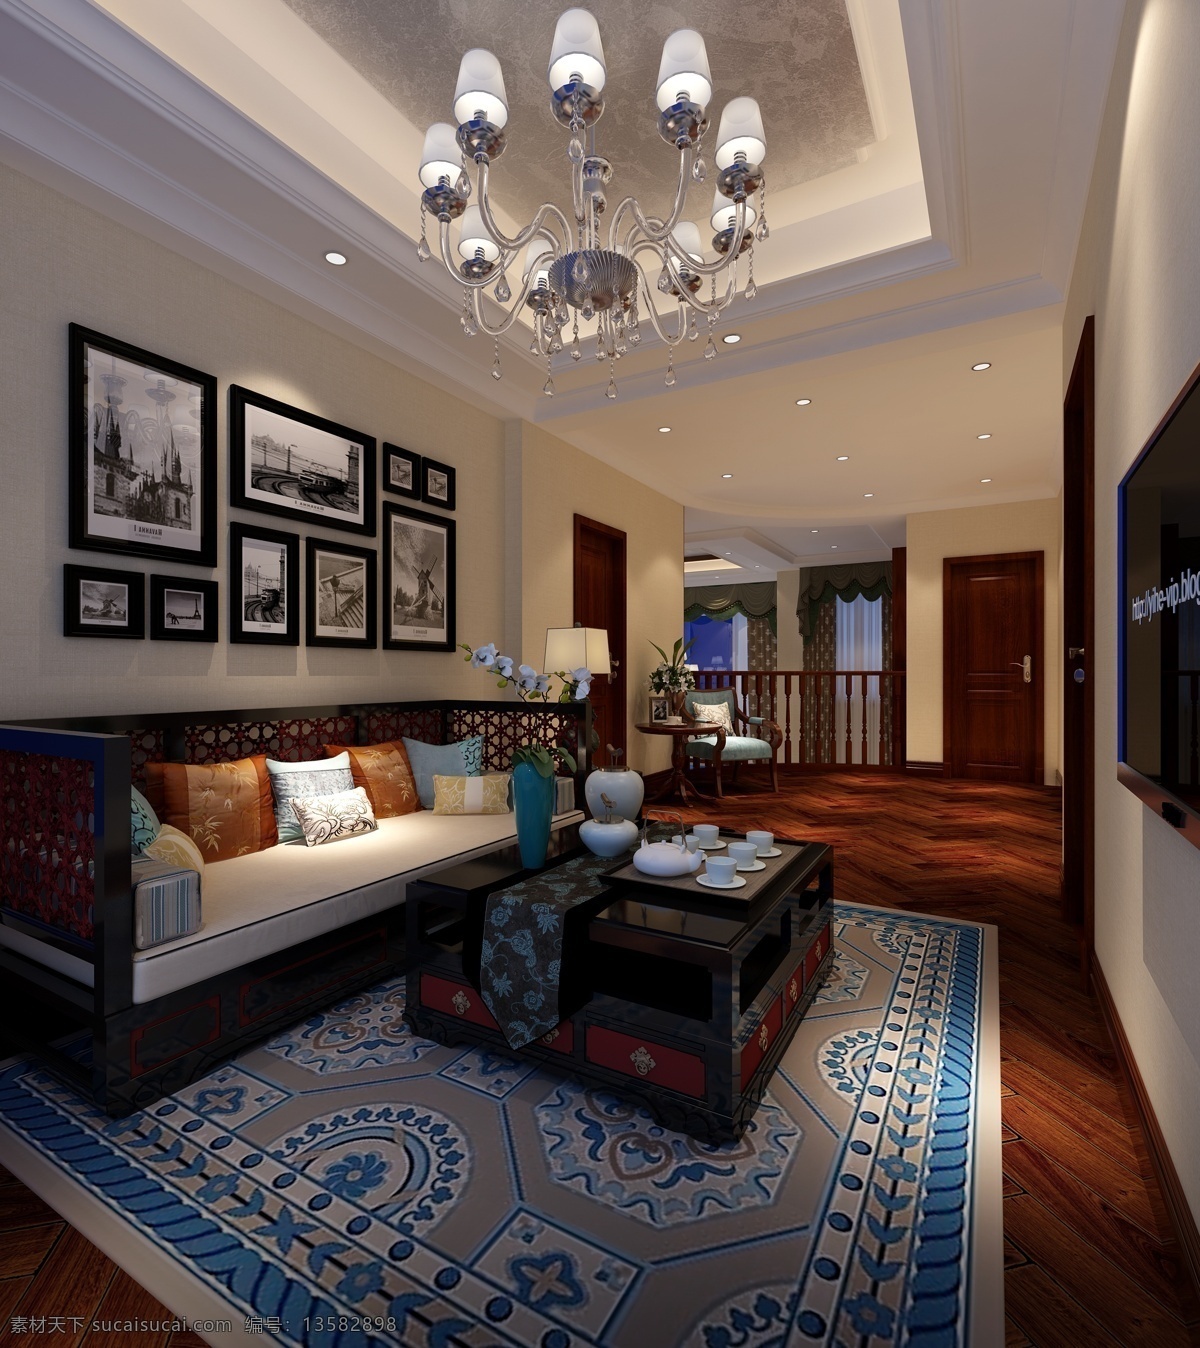 现代 客厅 异域风情 地毯 室内装修 效果图 客厅装修 蓝色地毯 水晶吊灯 方形茶几